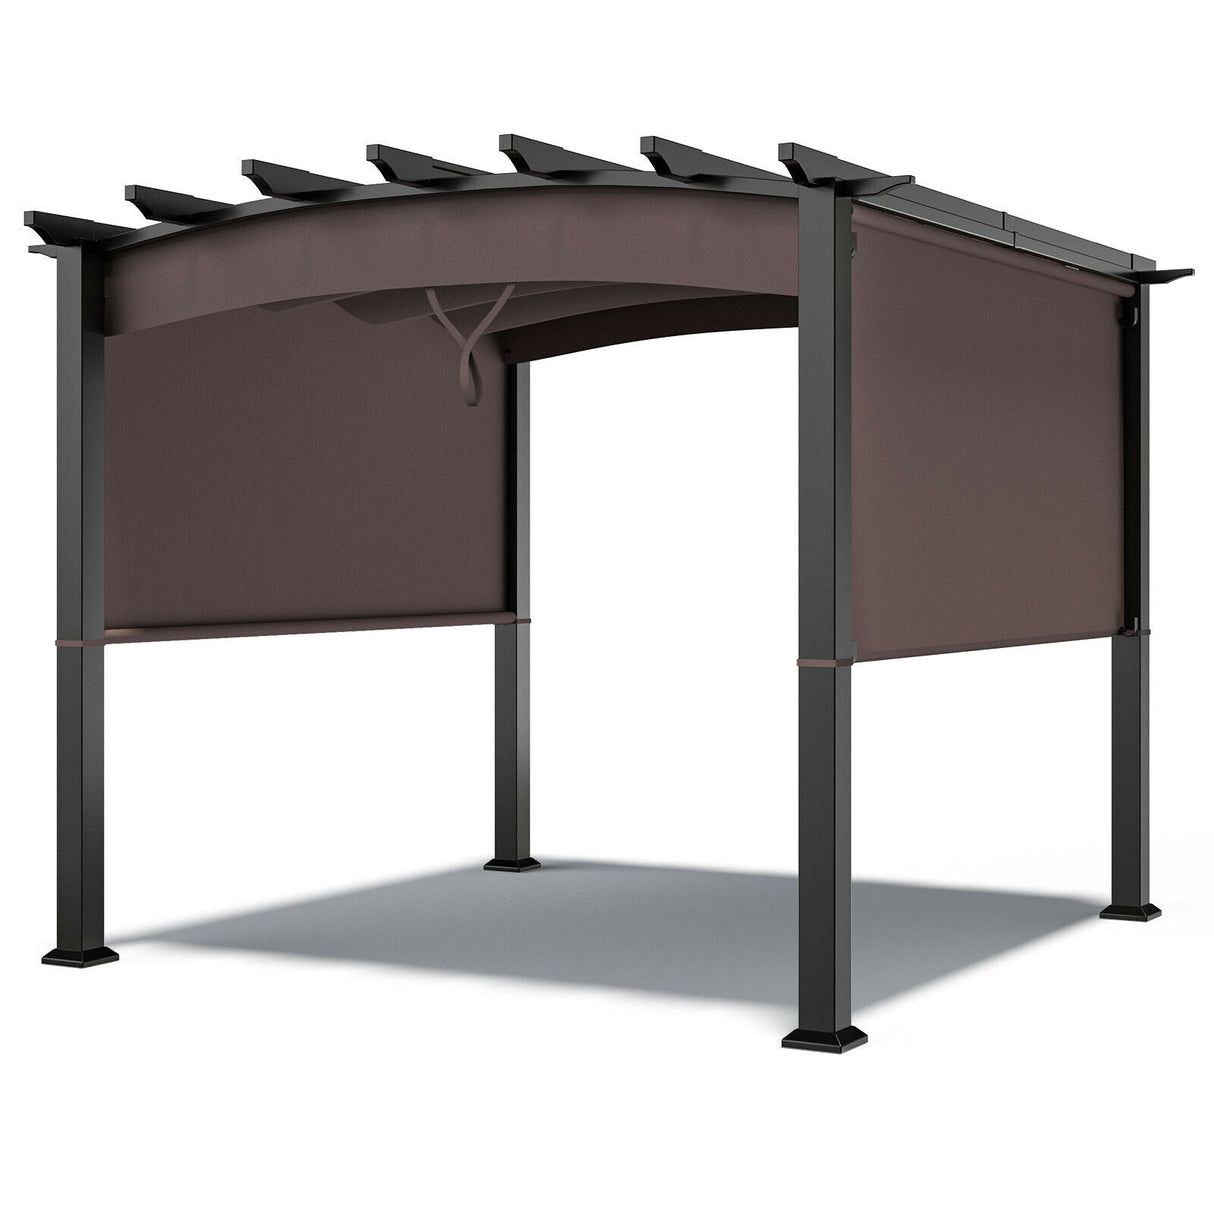 10 ft x 10 ft Patio Pergola Gazebo Sun Shade Shelter W/Retractable Canopy